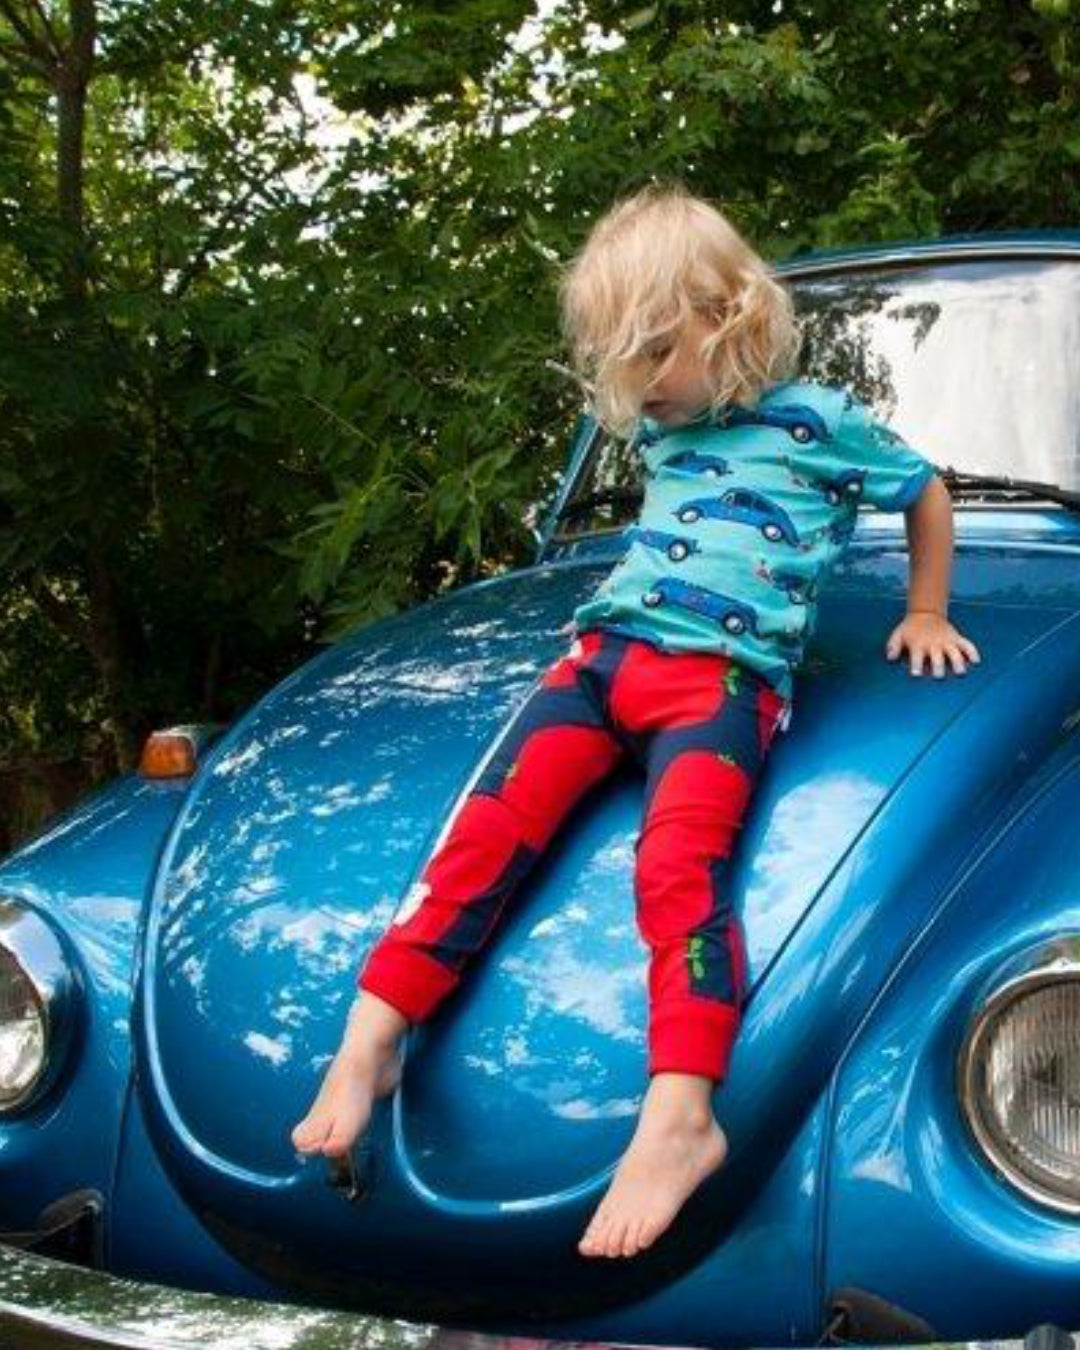 Kind auf Auto mit Biomode von moromini